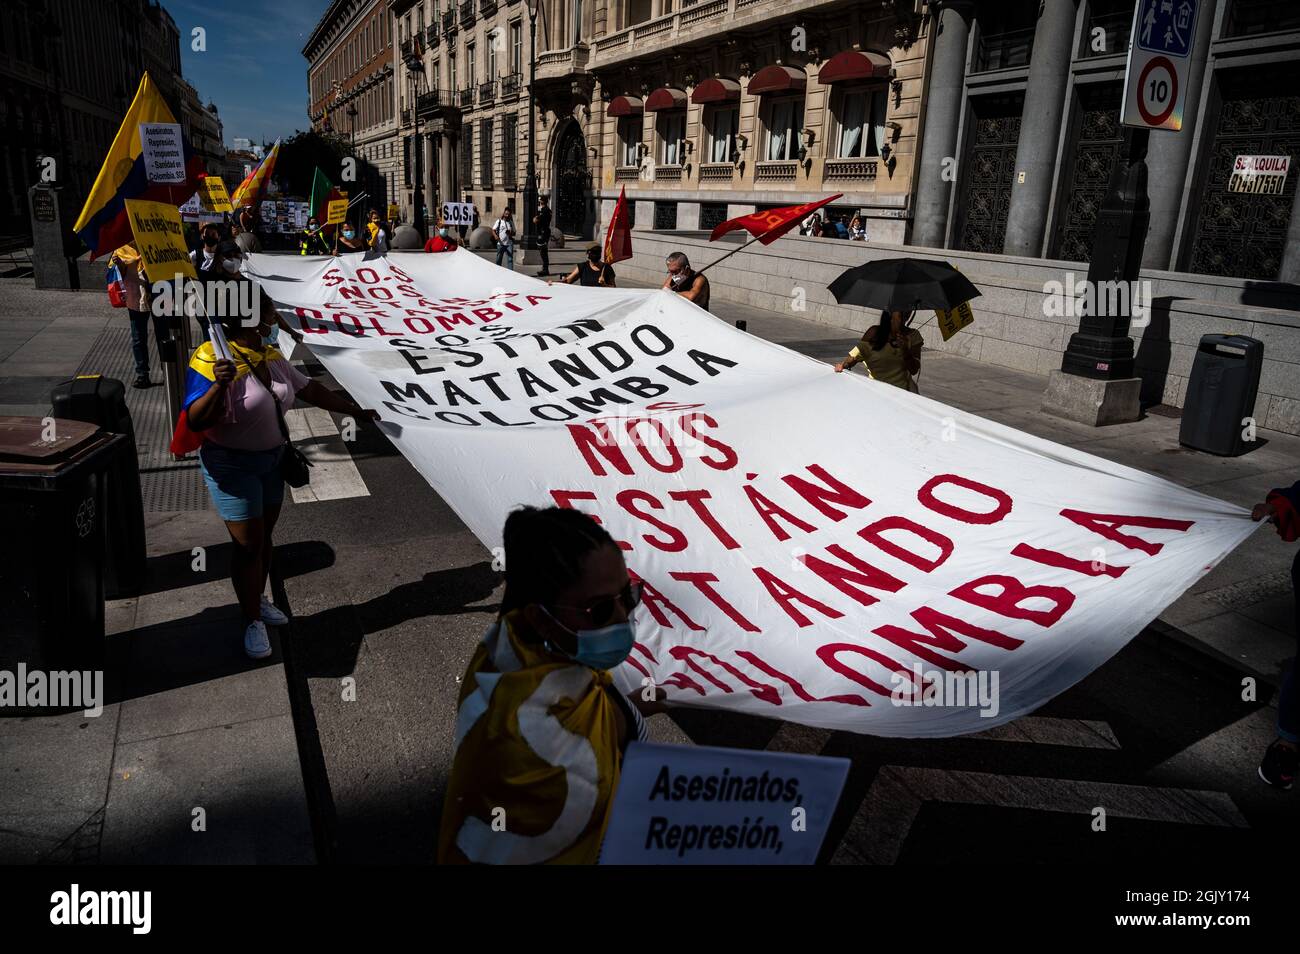 Madrid, Spanien. September 2021. Demonstranten, die während einer Demonstration gegen den Besuch des kolumbianischen Präsidenten Ivan Duque auf der Madrider Buchmesse 2021 ein großes Banner trugen. Quelle: Marcos del Mazo/Alamy Live News Stockfoto